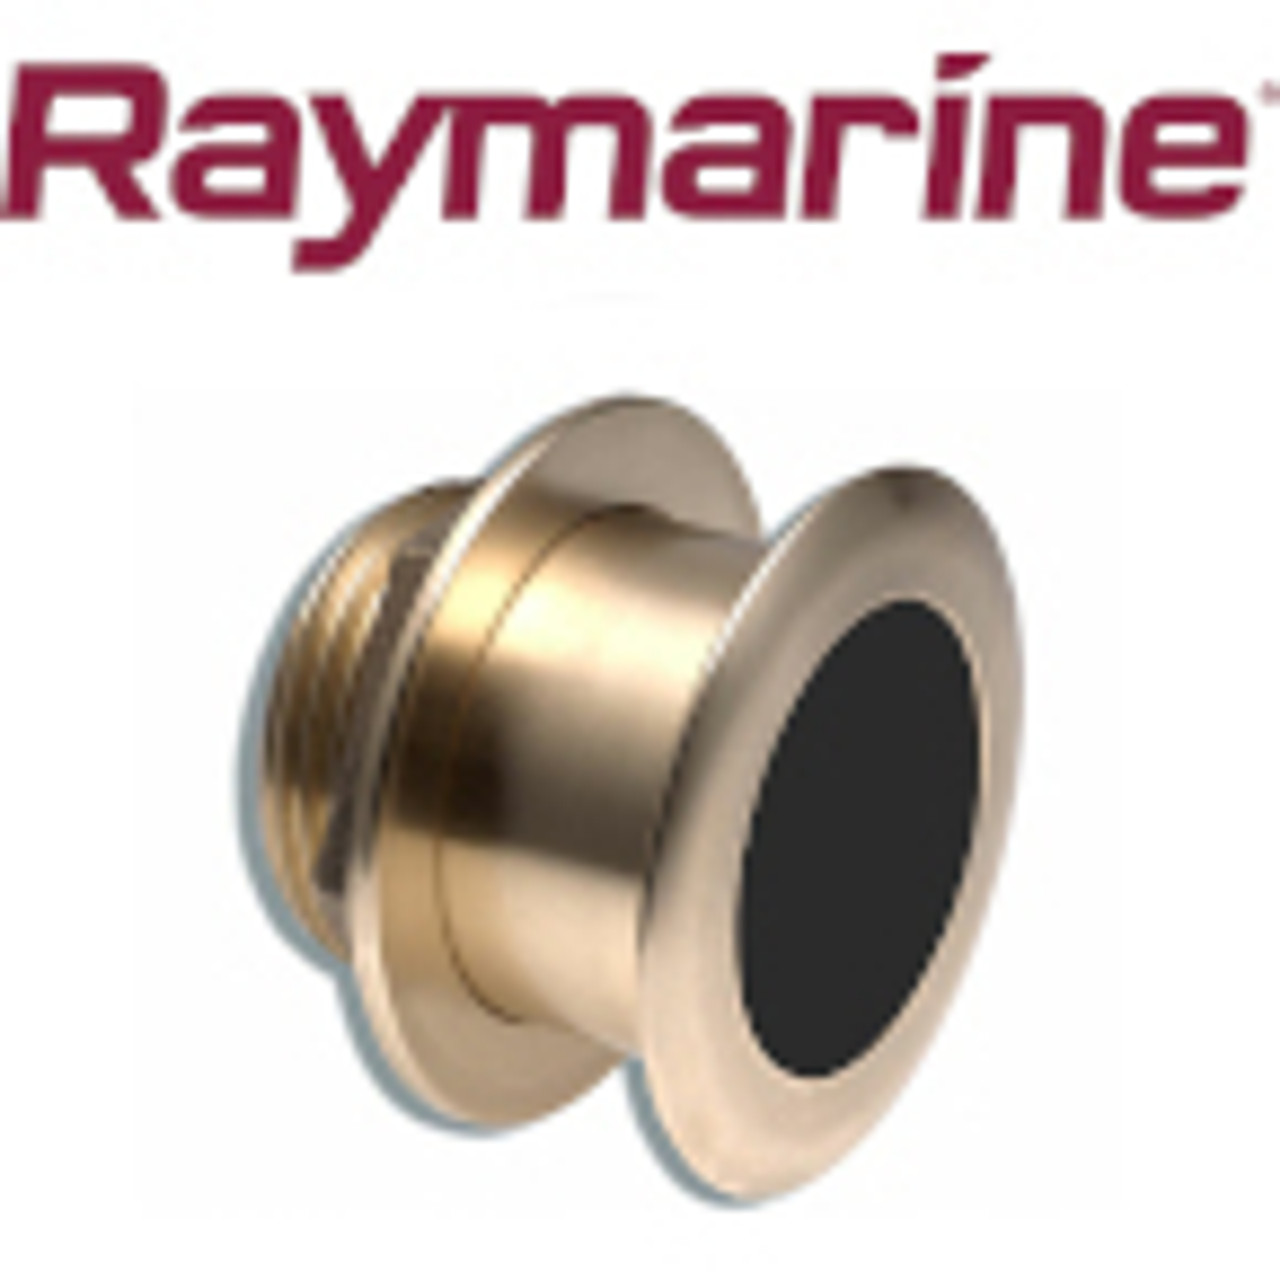 Raymarine Tilted Element Transducers